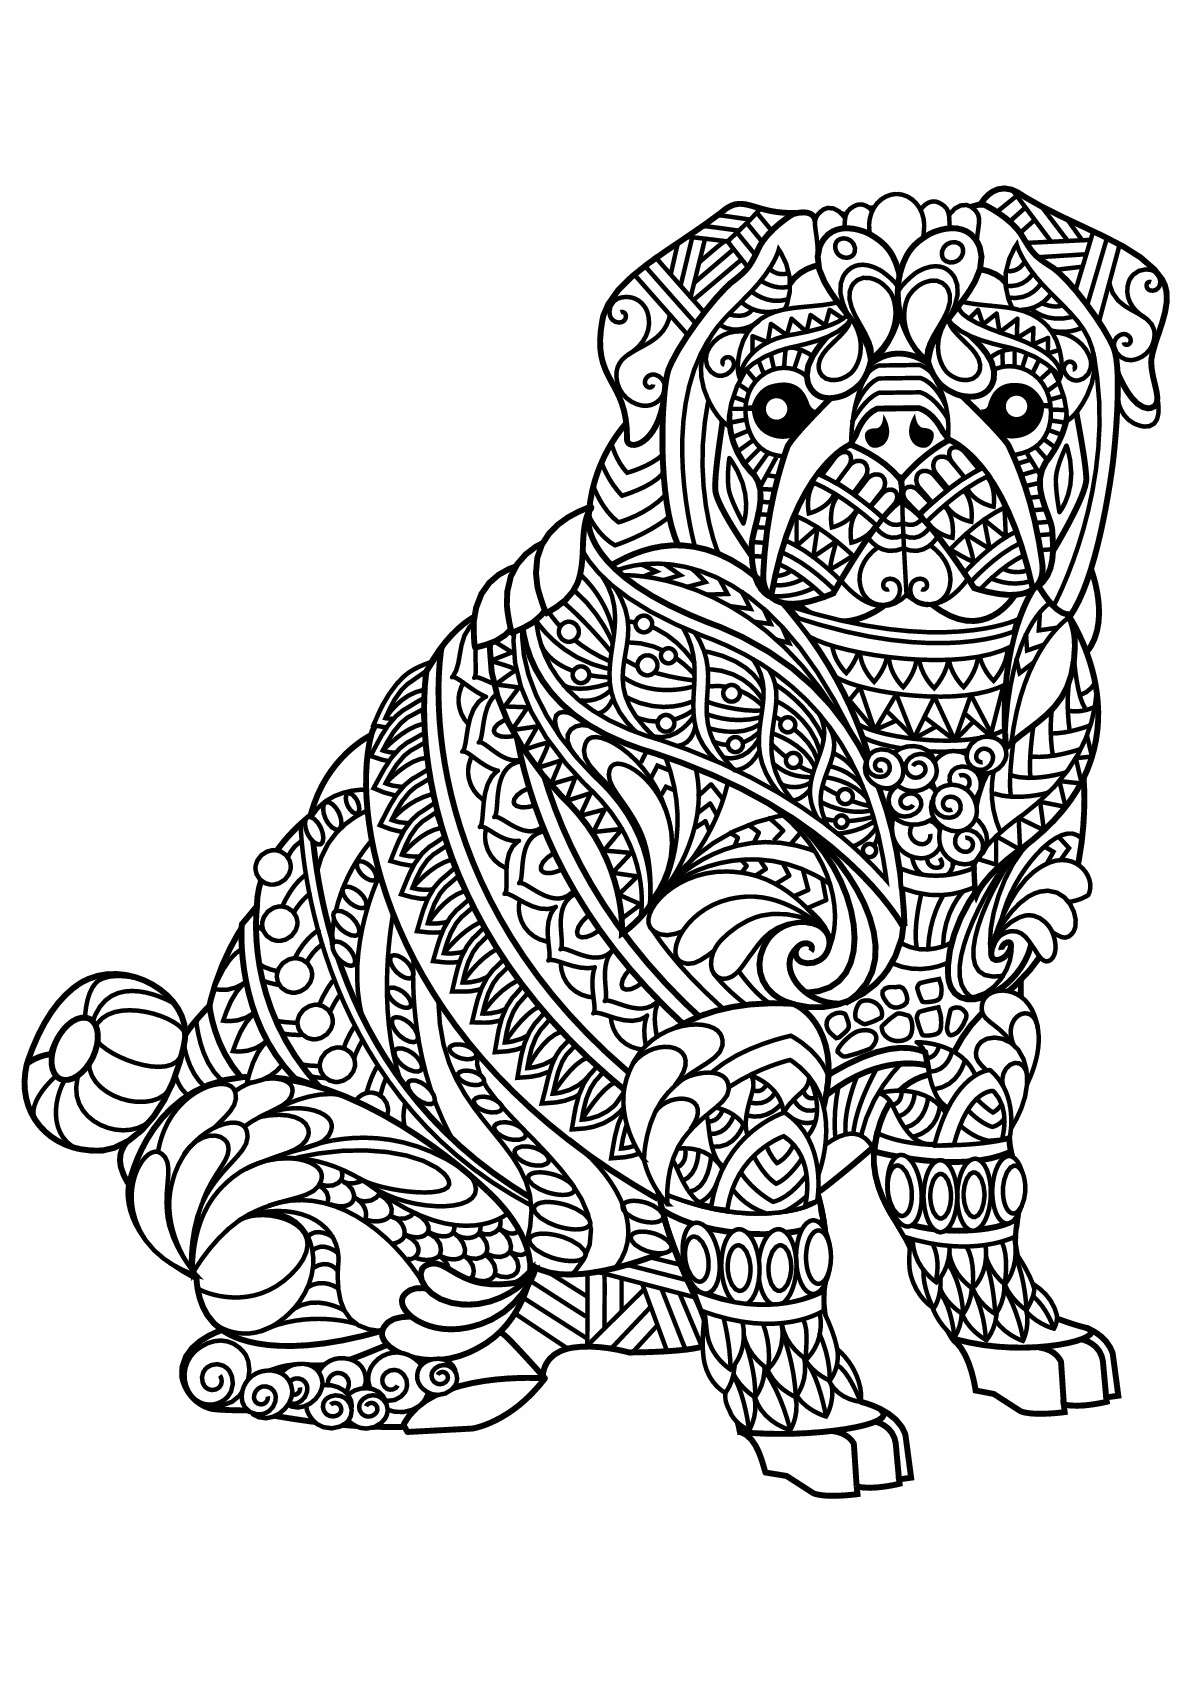 Coloriage Mandala Chien Nouveau Image Livre Gratuit Chien Bulldog Chiens Coloriages